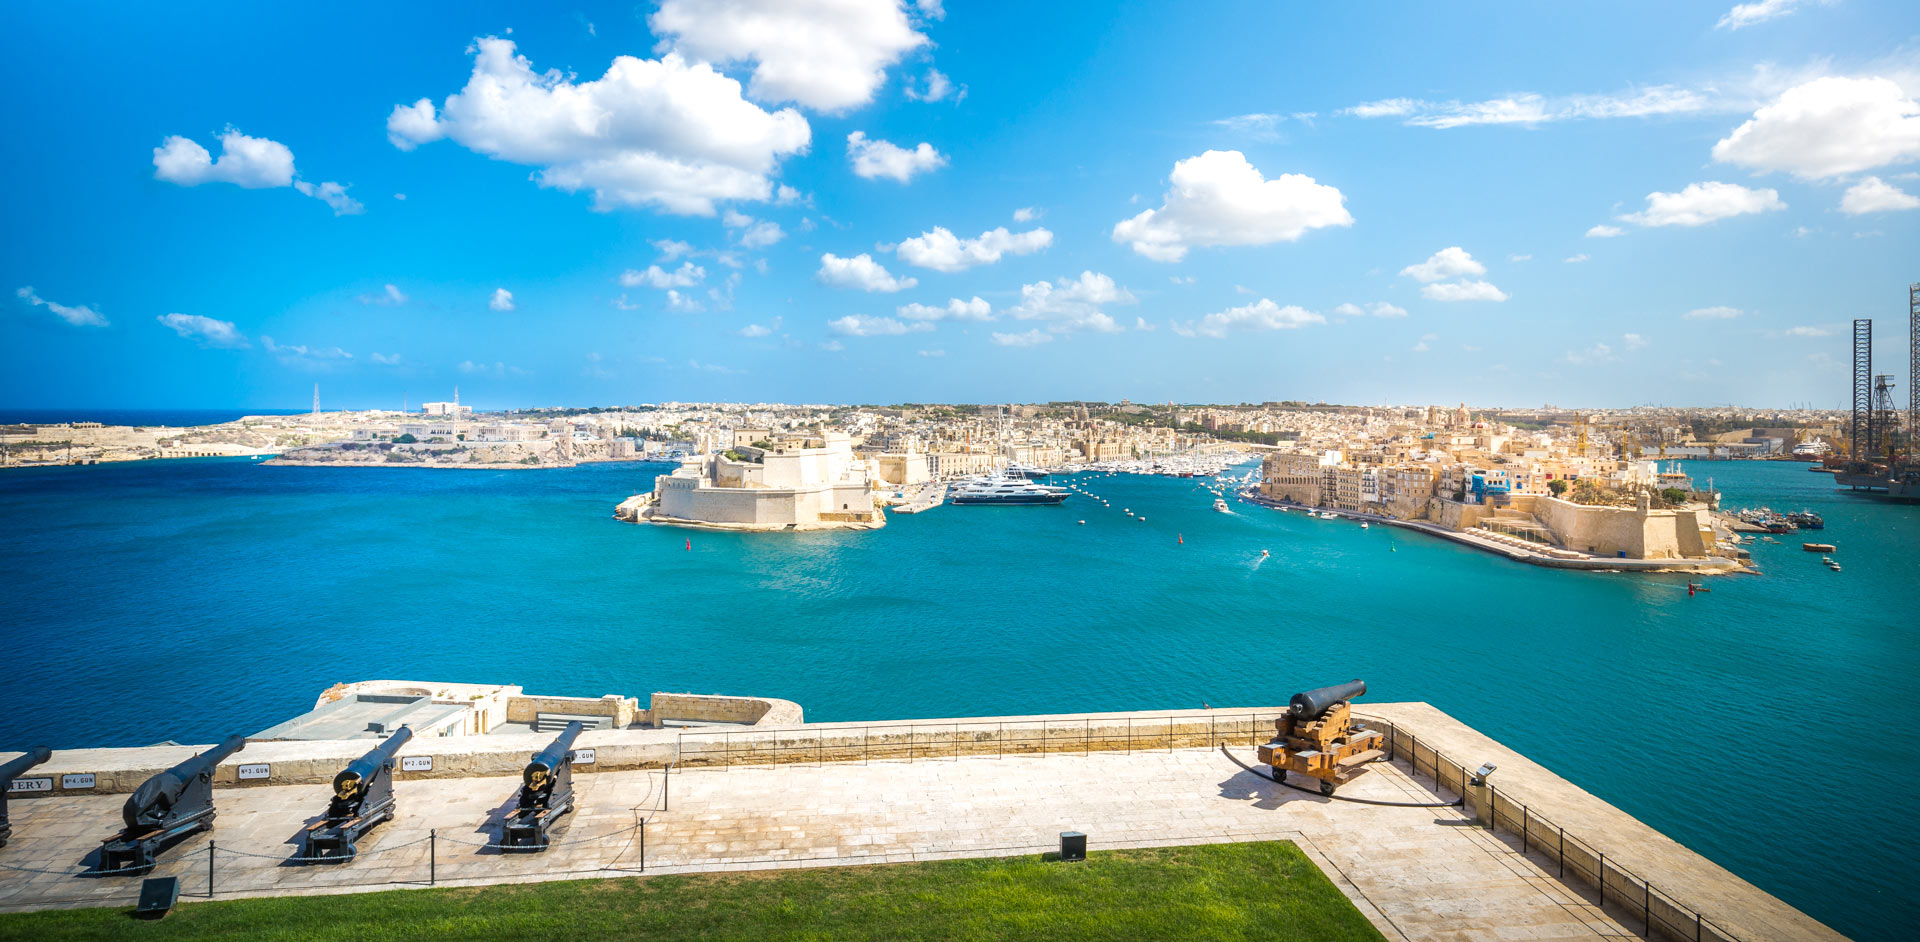 Valletta itinerary 2 days